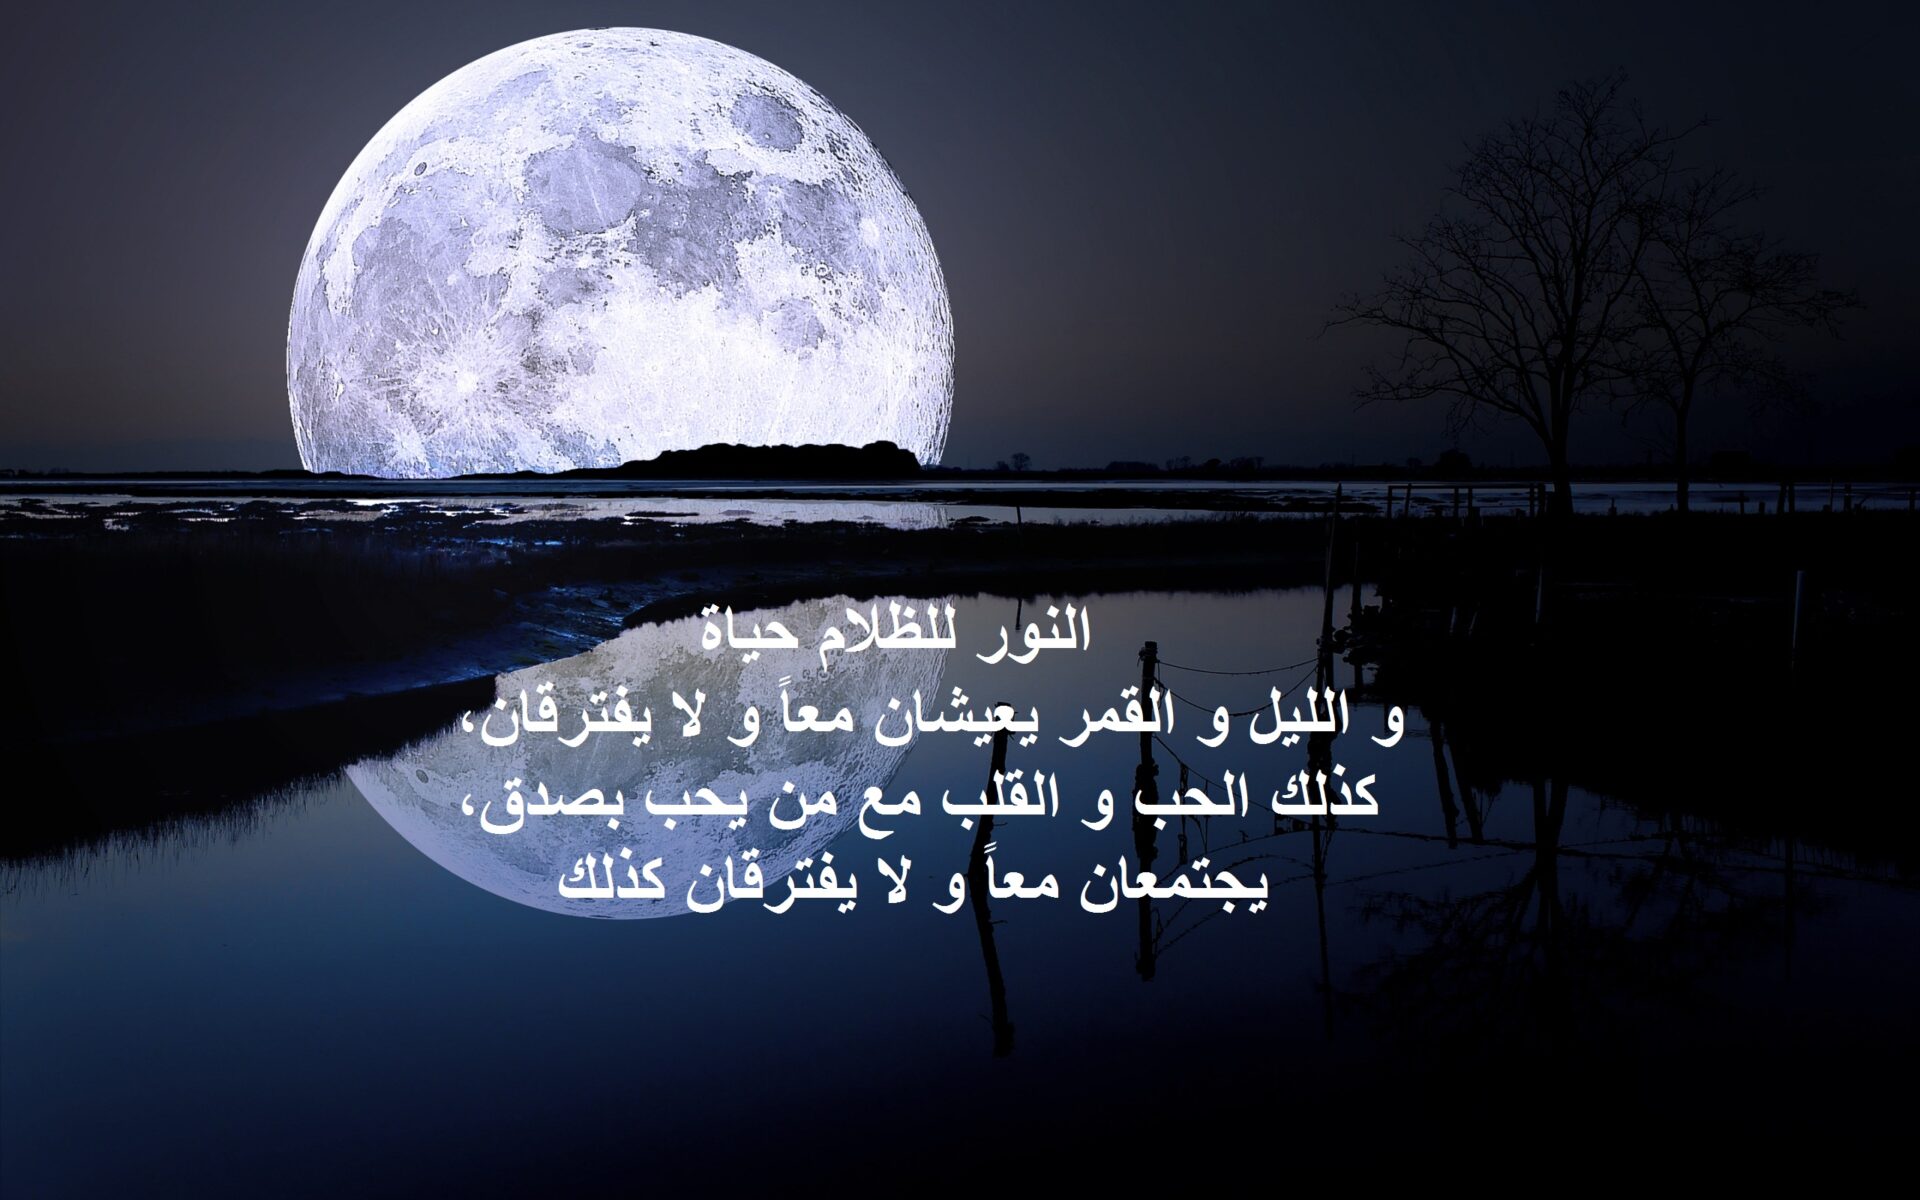 كلام جميل عن القمر والليل وأجمل مقولات وخواطر قصيرة